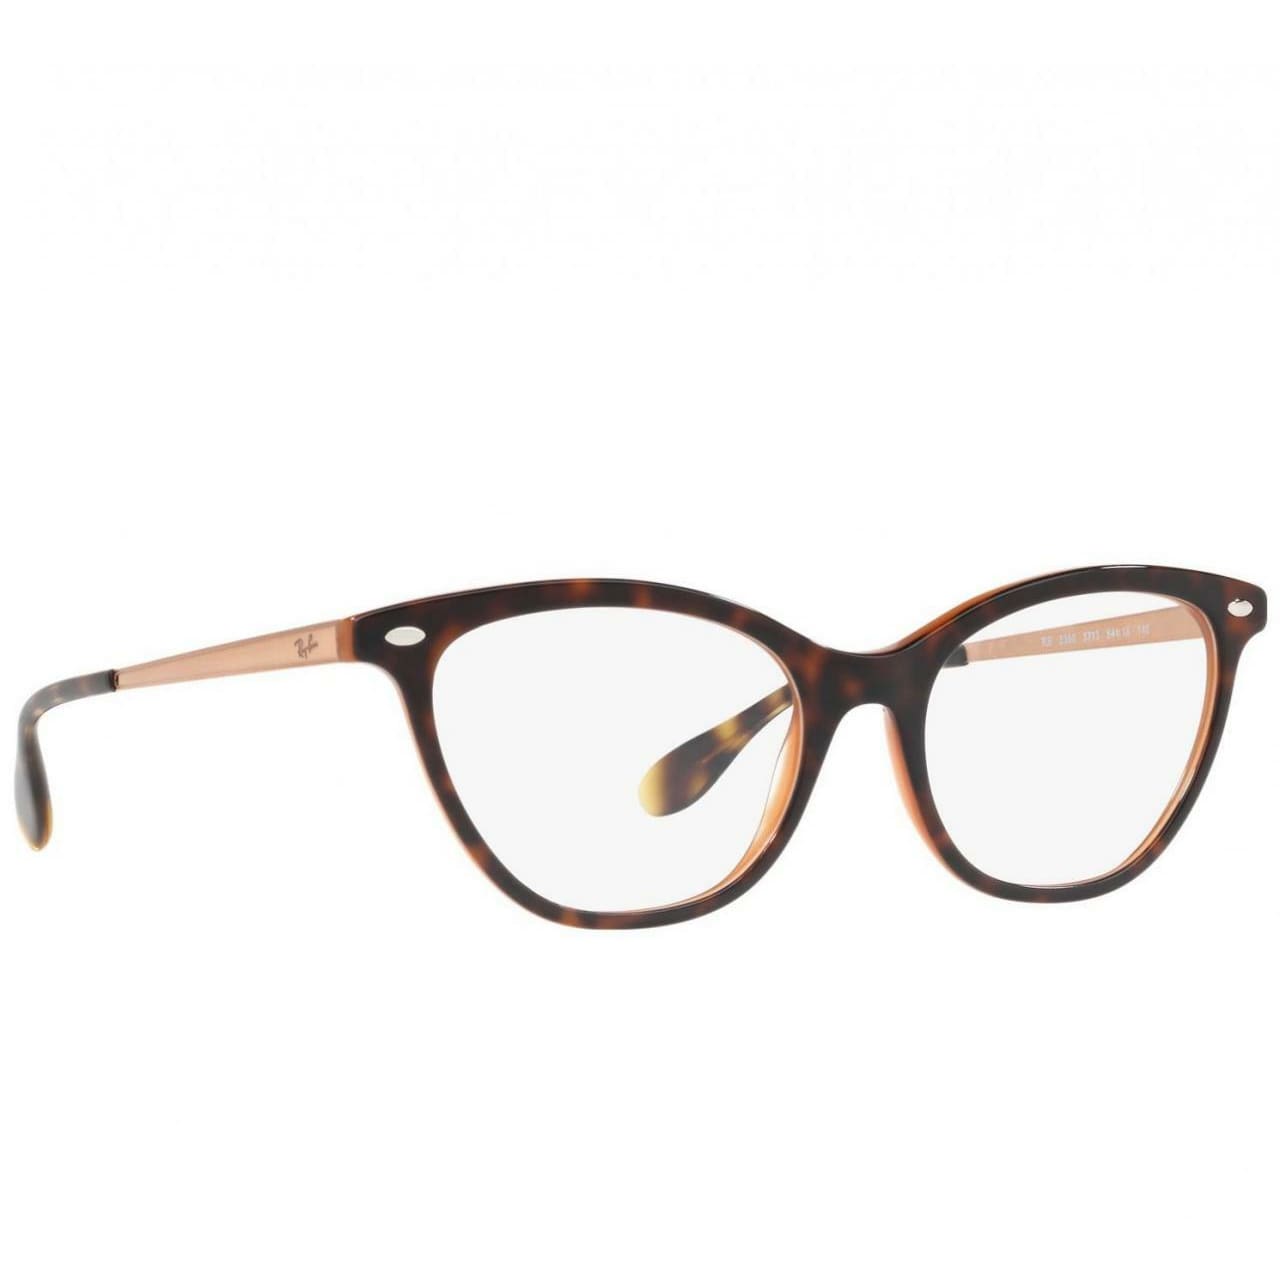 Ray-Ban RB5360-5713 Tortoise / Bronze Copper Full Rim Cat Eye Eyeglasses Frames 8053672786088